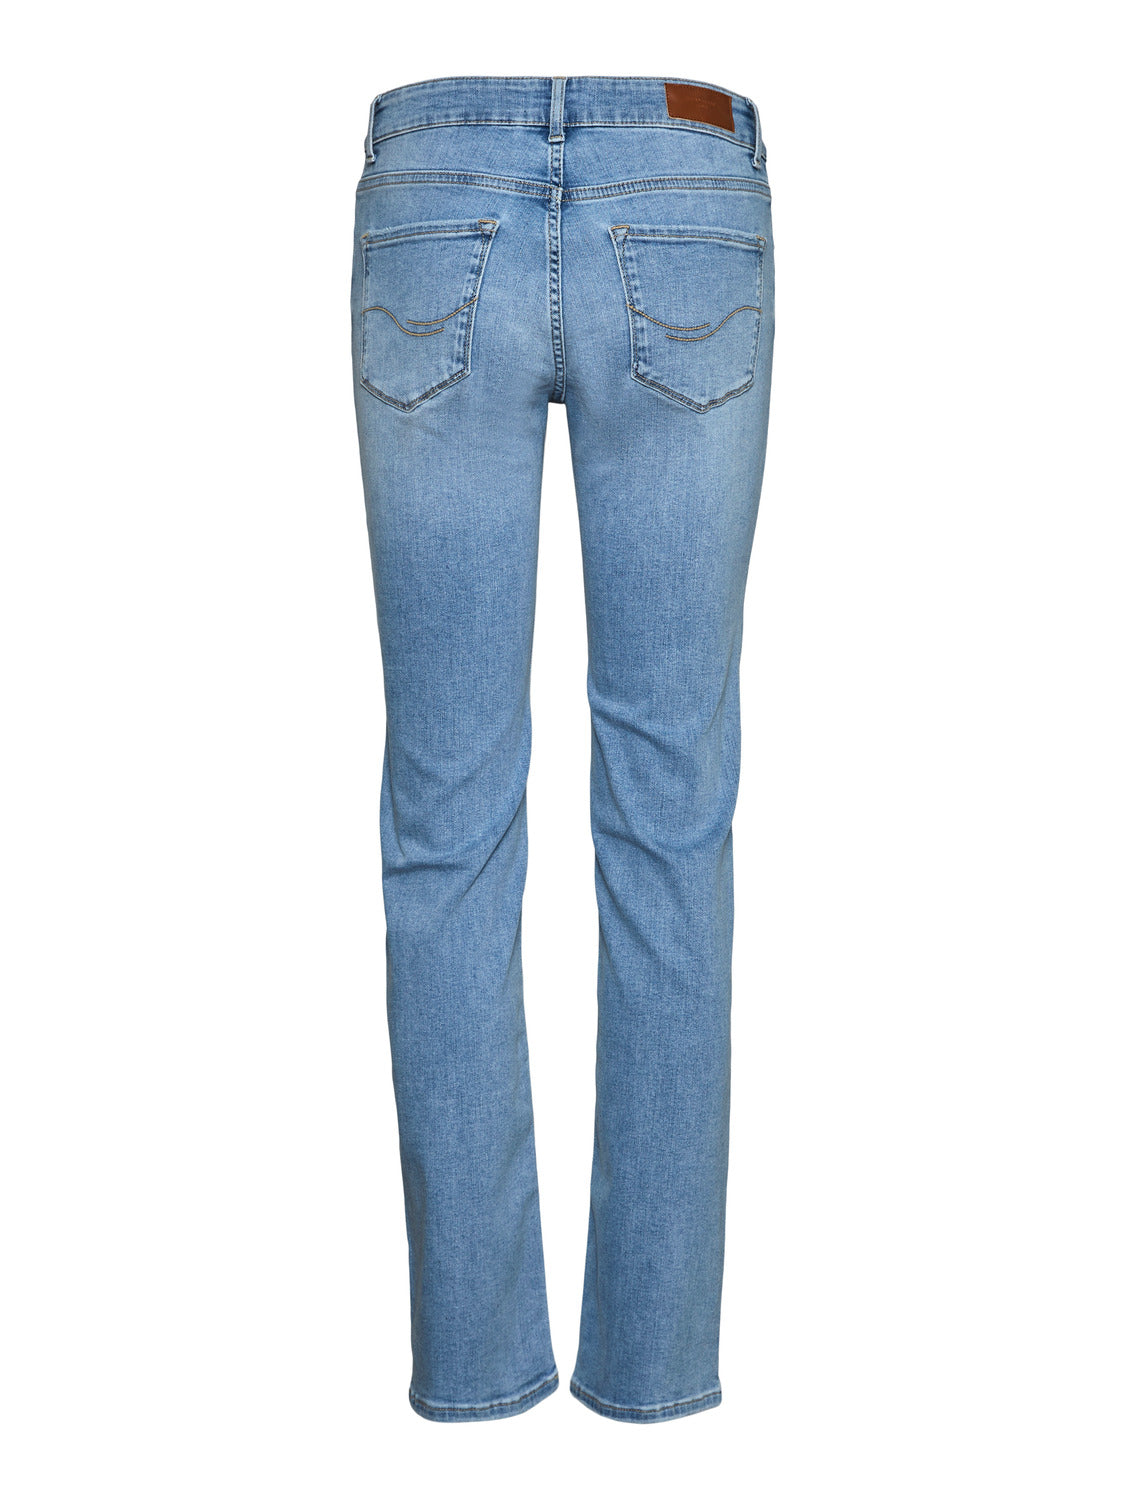 VMDAF Jeans - Light Blue Denim